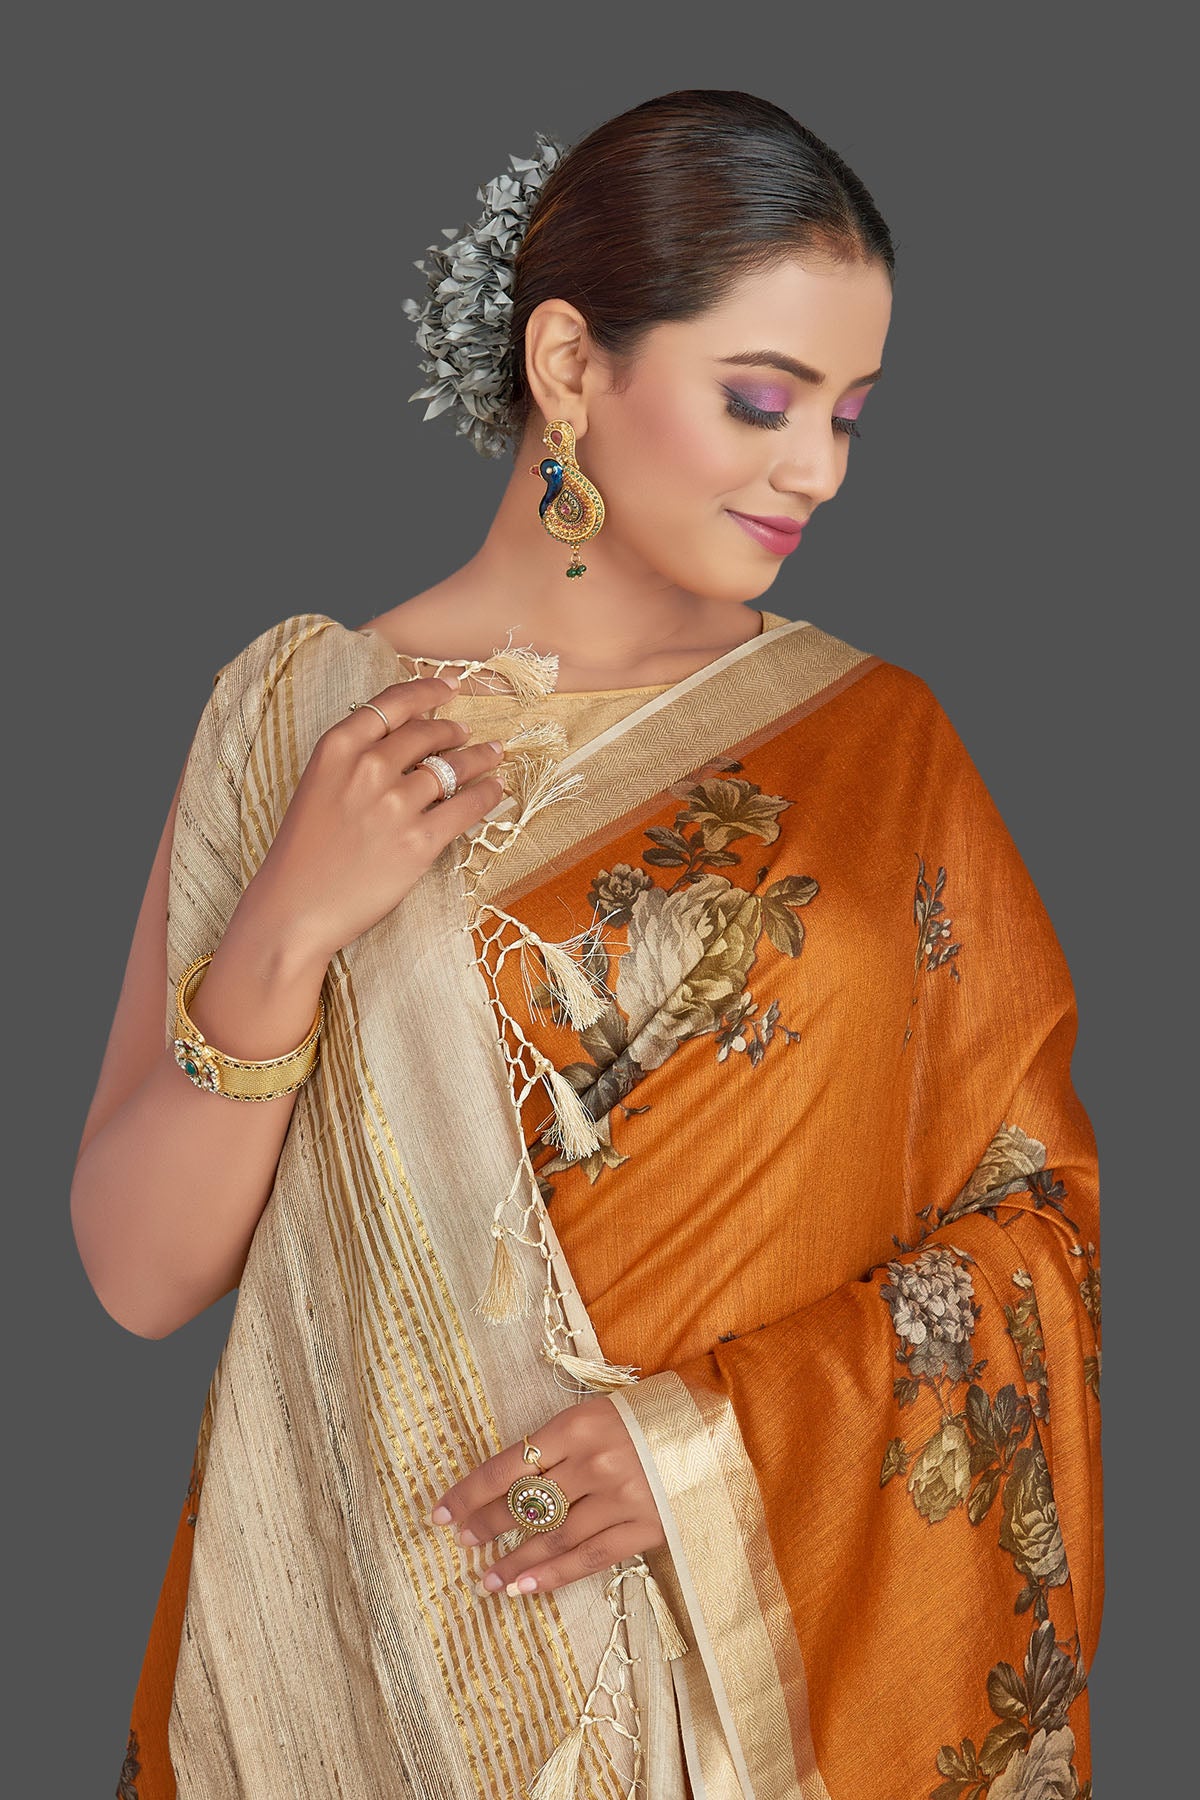 Buy stunning dark orange floral print tussar Banarasi saree online in USA with beige pallu. Look your best on special occasions with stunning Banarasi saris, pure silk saris, tussar sarees, handwoven sarees from Pure Elegance Indian saree store in USA.-closeup